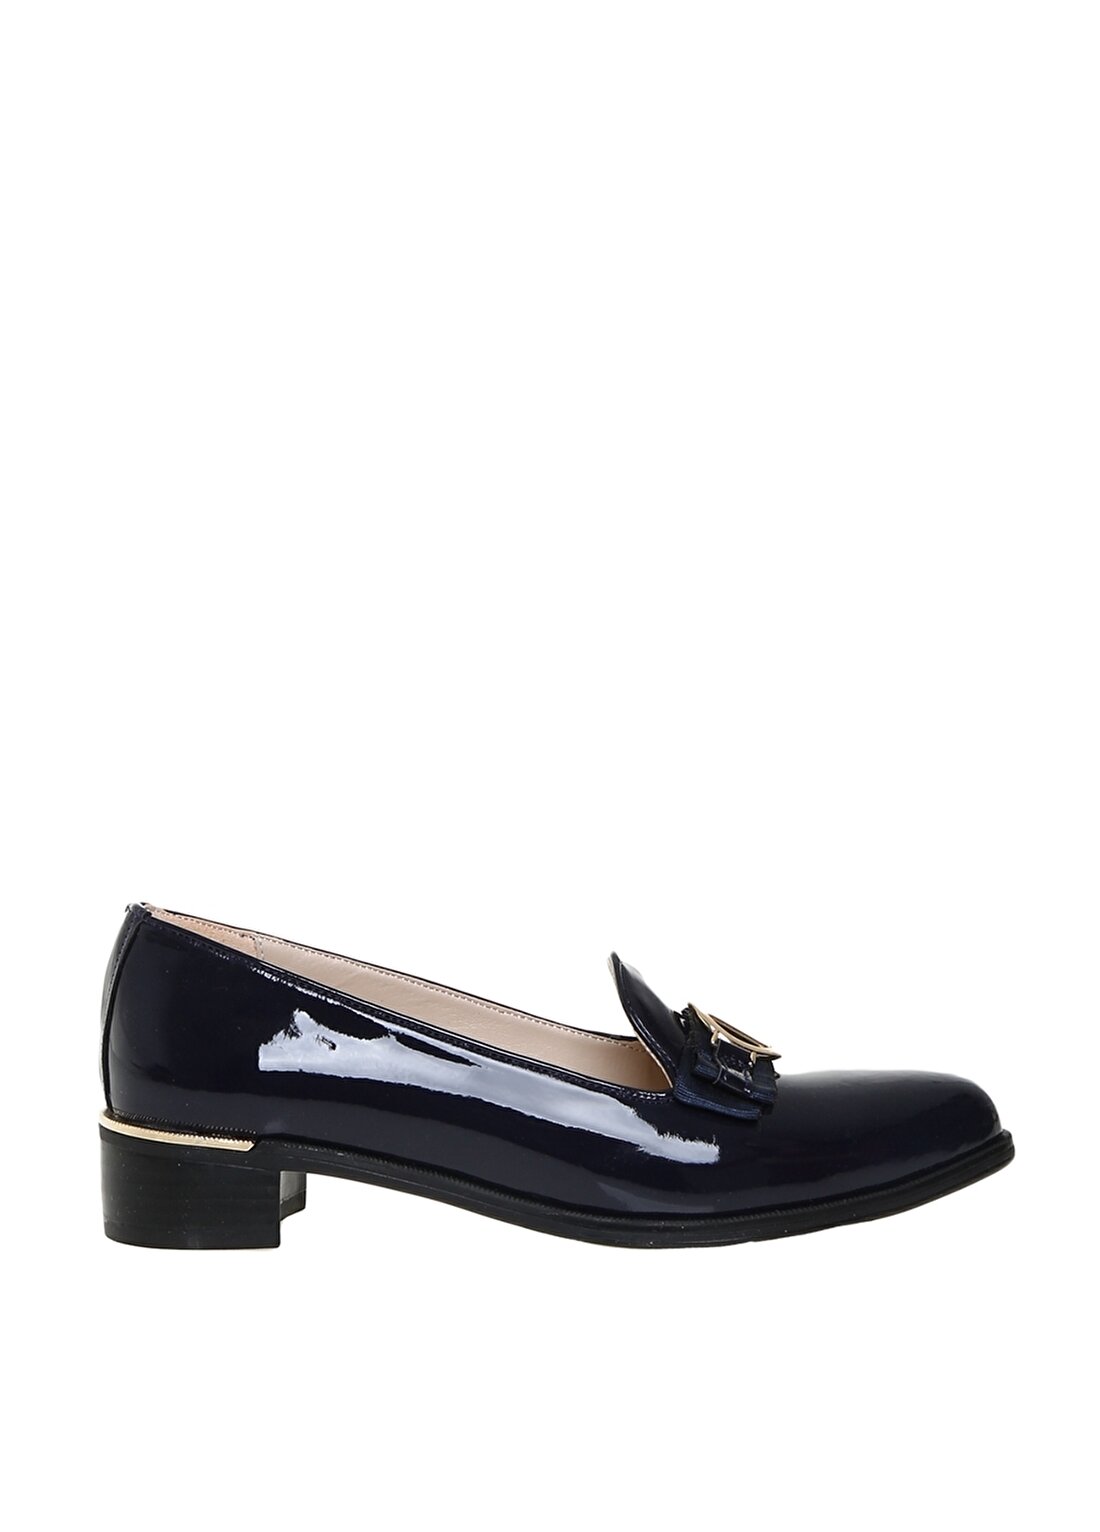 Pierre Cardin Kadın Lacivert Rugan Topuklu Ayakkabı